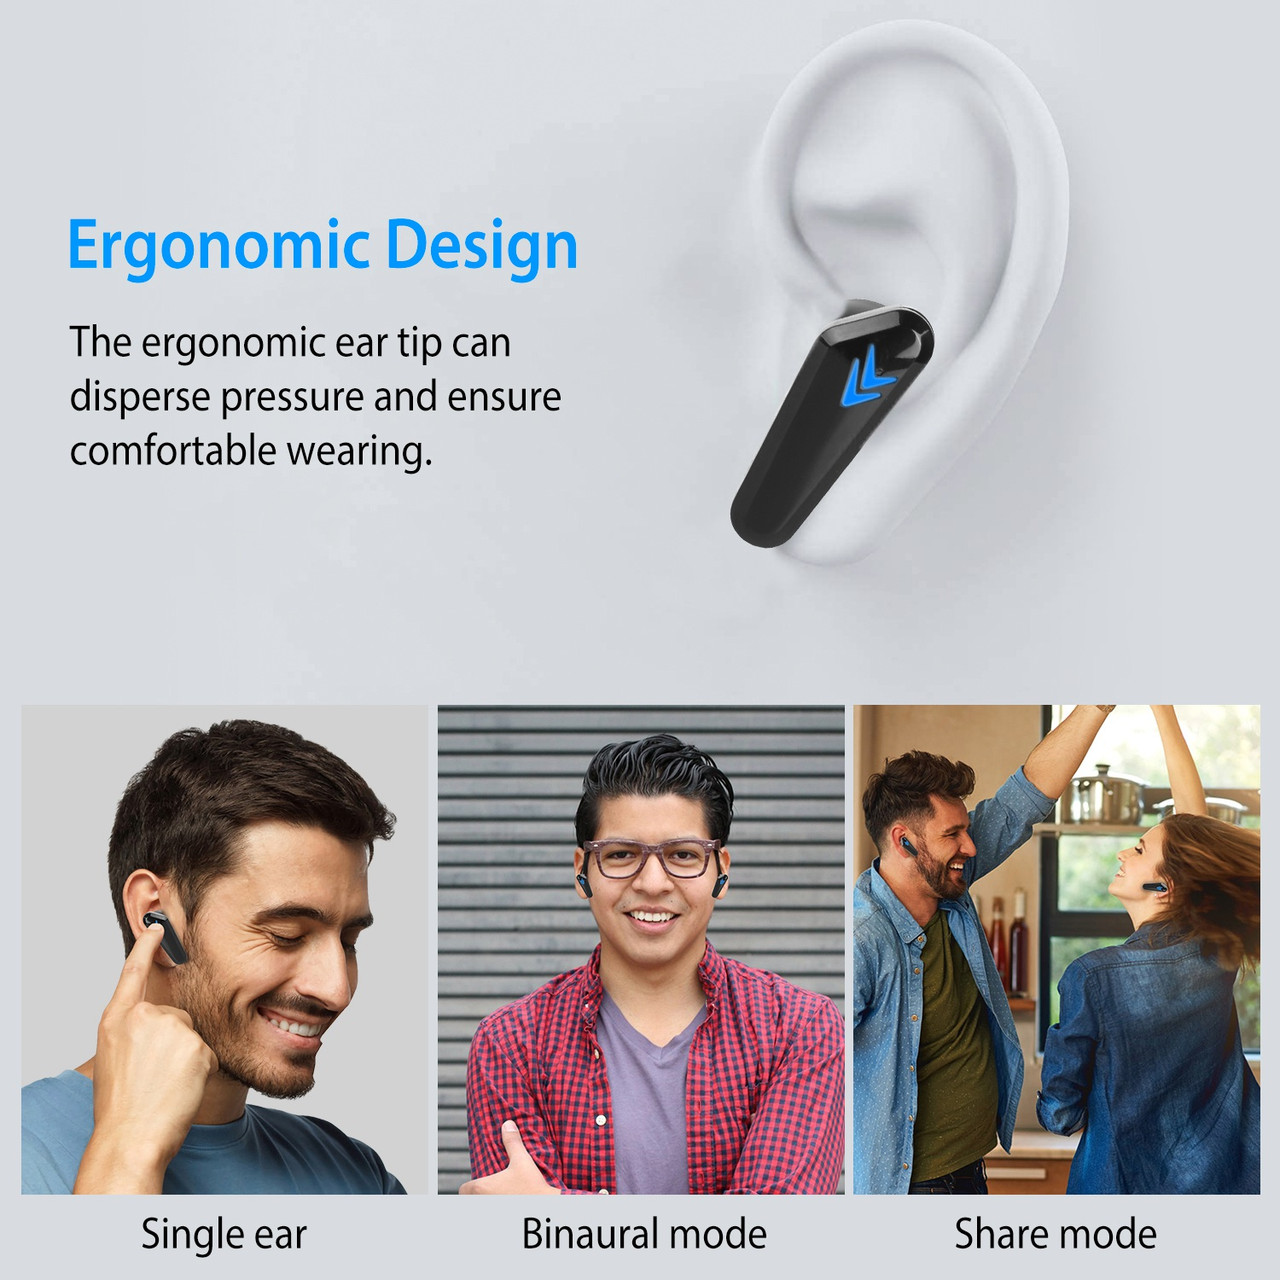 iMounTEK® Wireless TWS 5.0 Earbuds product image